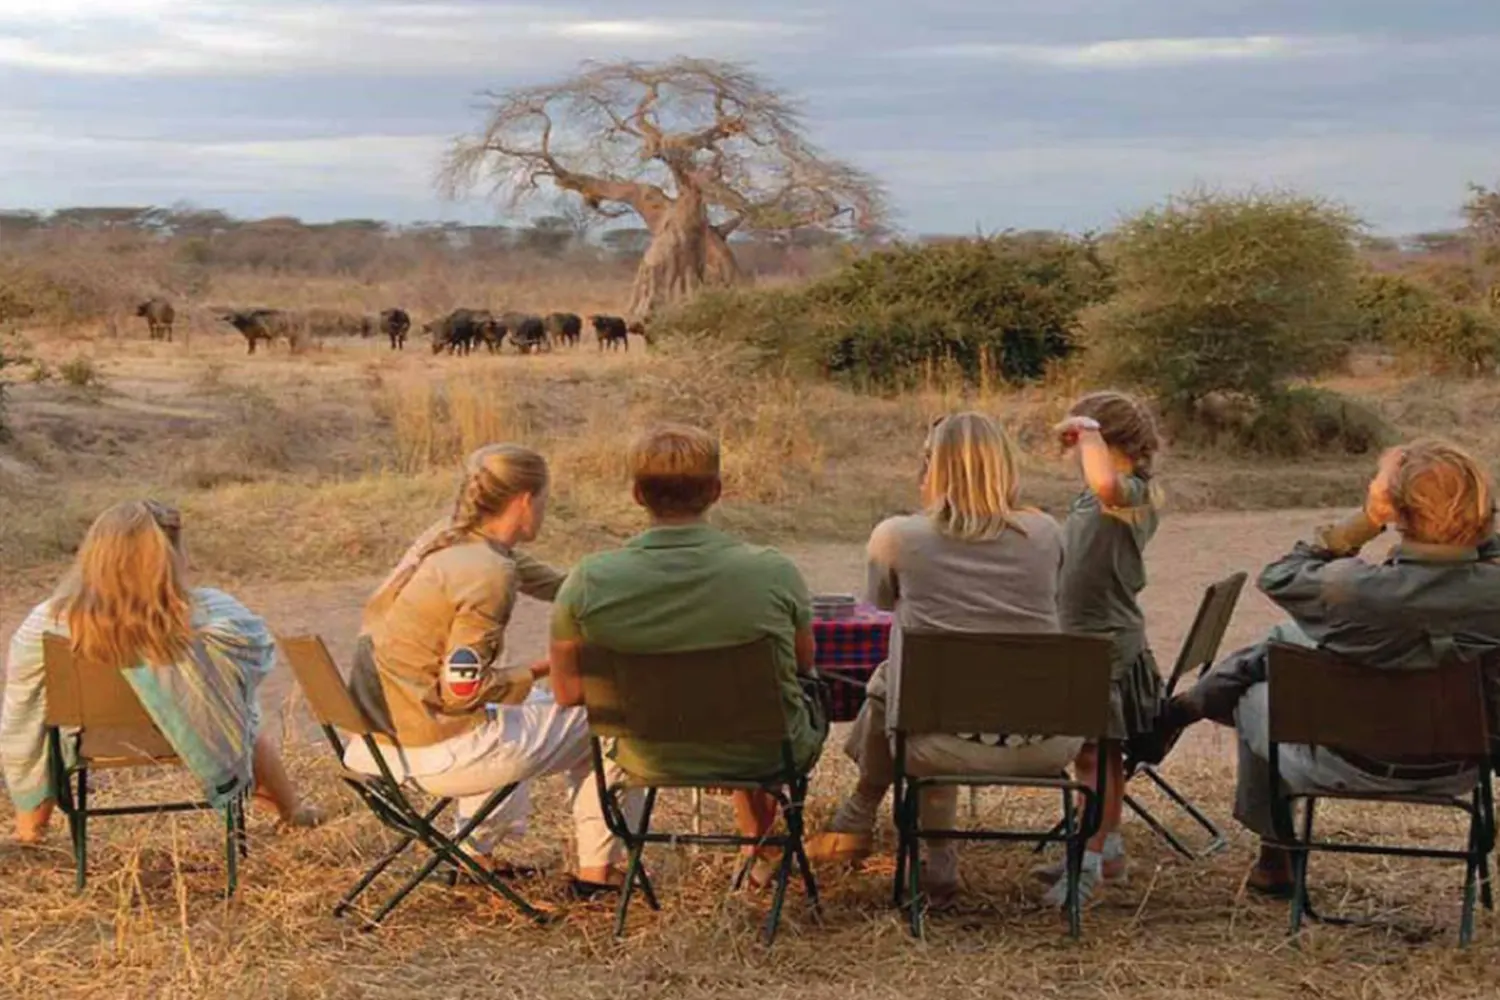 Tanzania southern safari